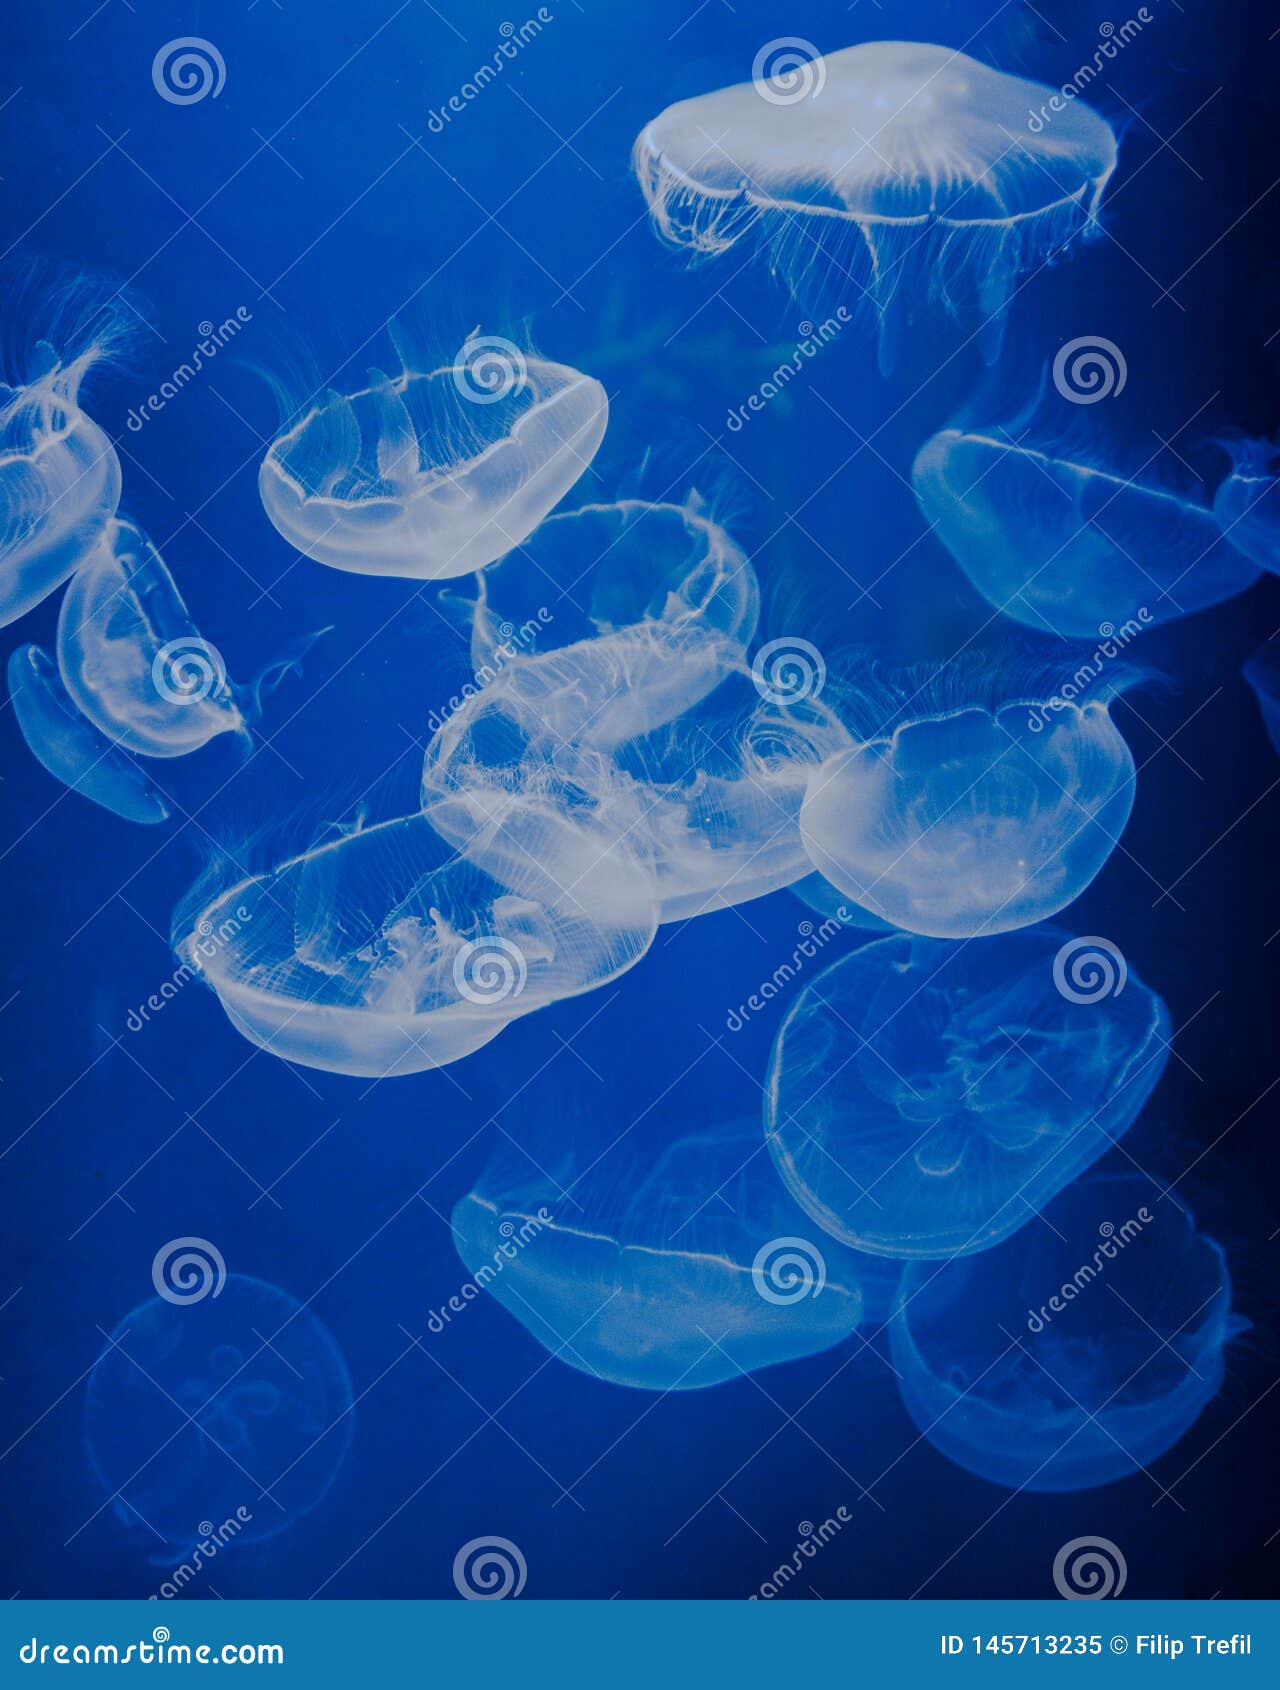 Blauwe medusas in een aquarium. Indrukwekkend kijk dankzij mooi blauw kleuren en hoogtecontrast